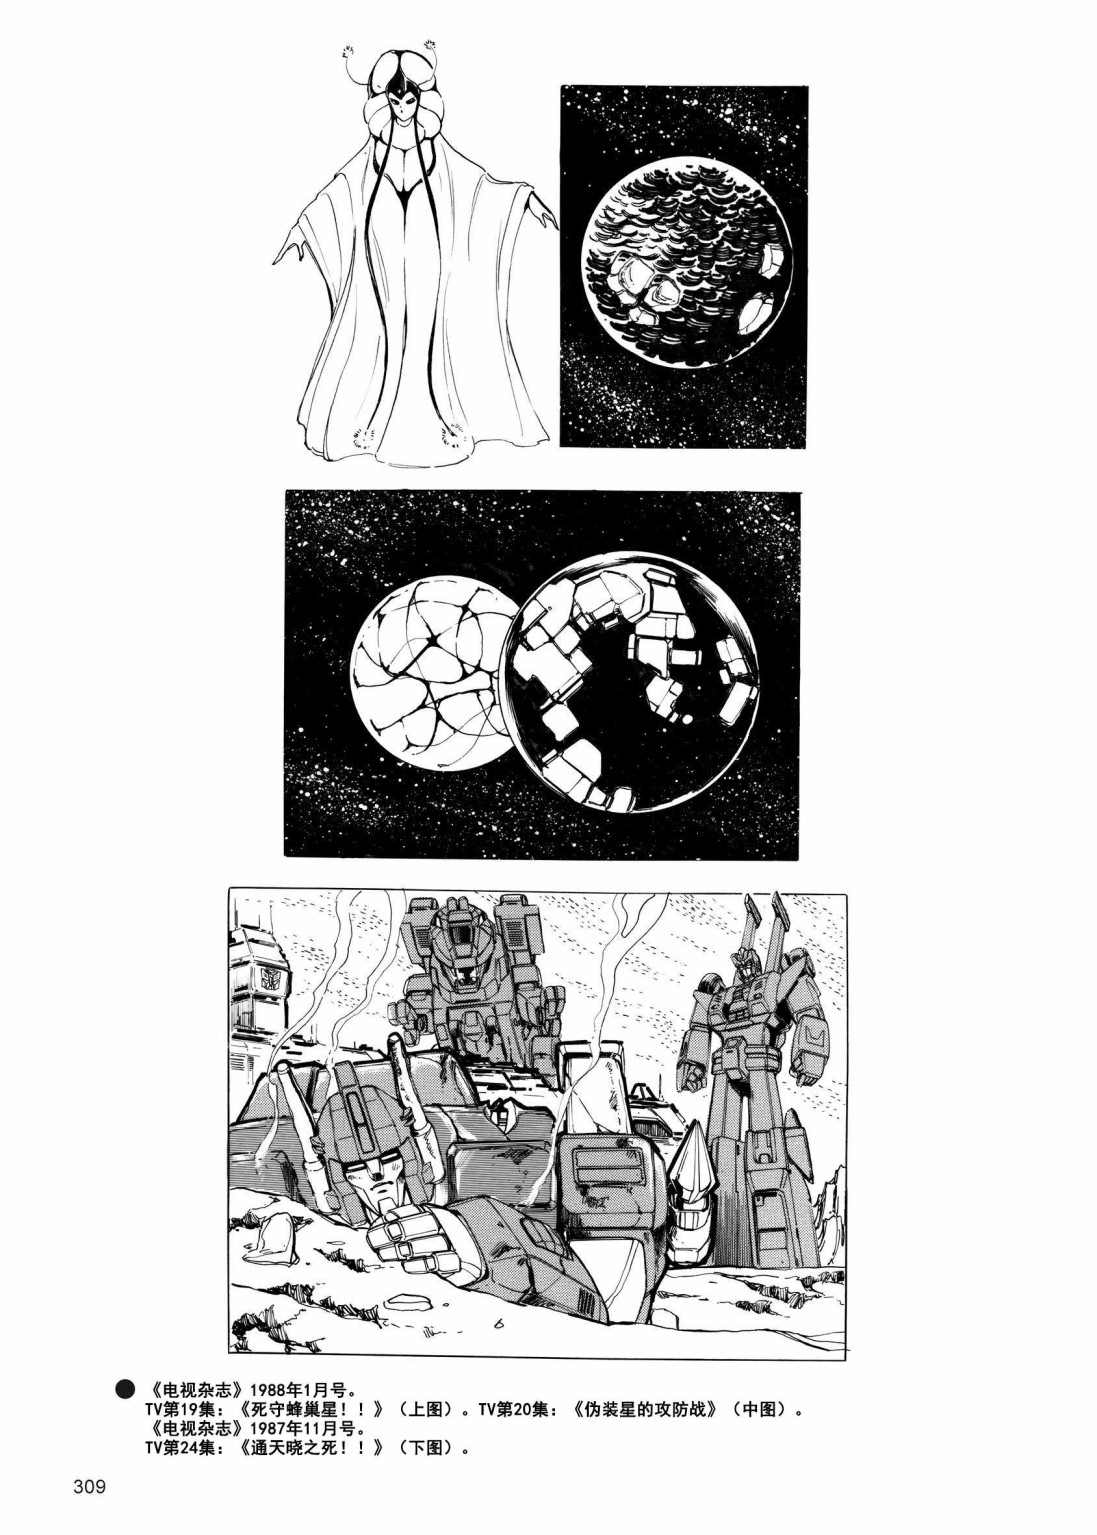 變形金剛日版G1雜誌插畫 - 變形金剛：頭領戰士 - 3